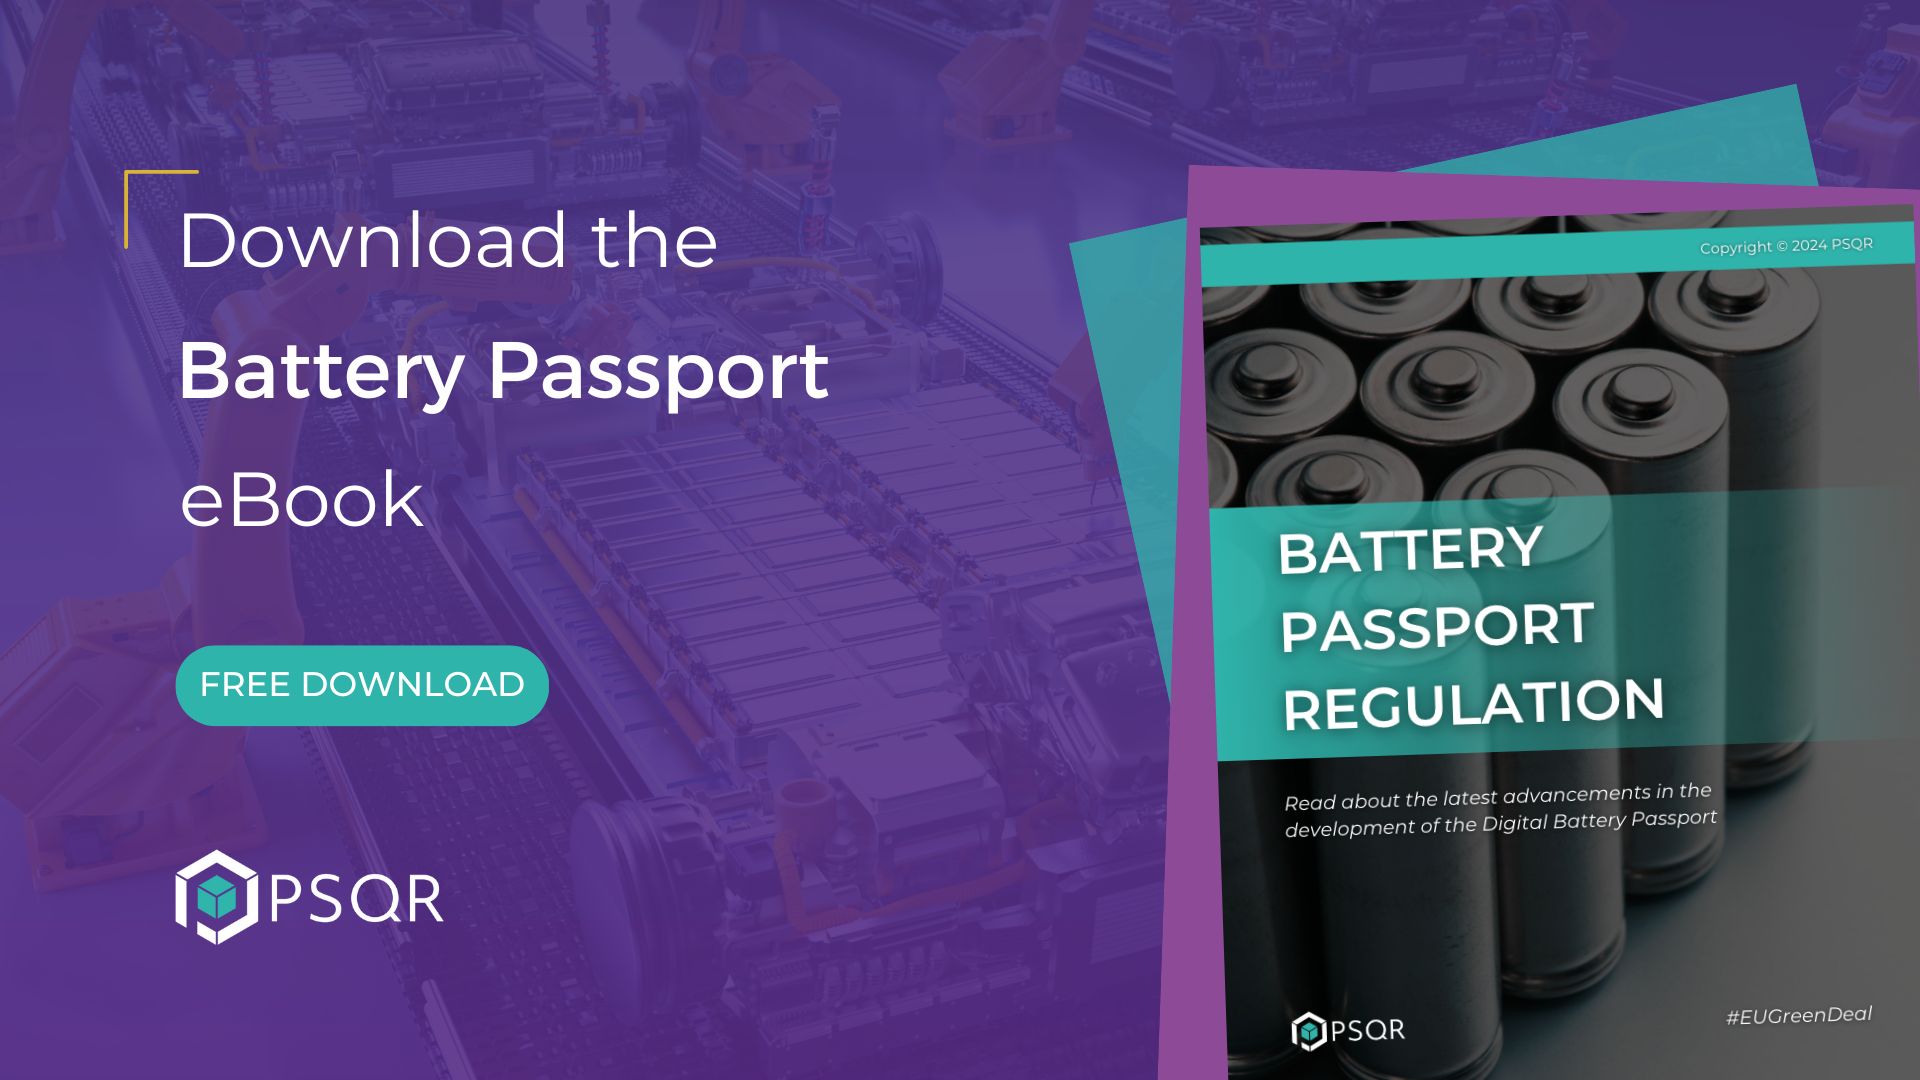 Battery Passport Regulation - eBook